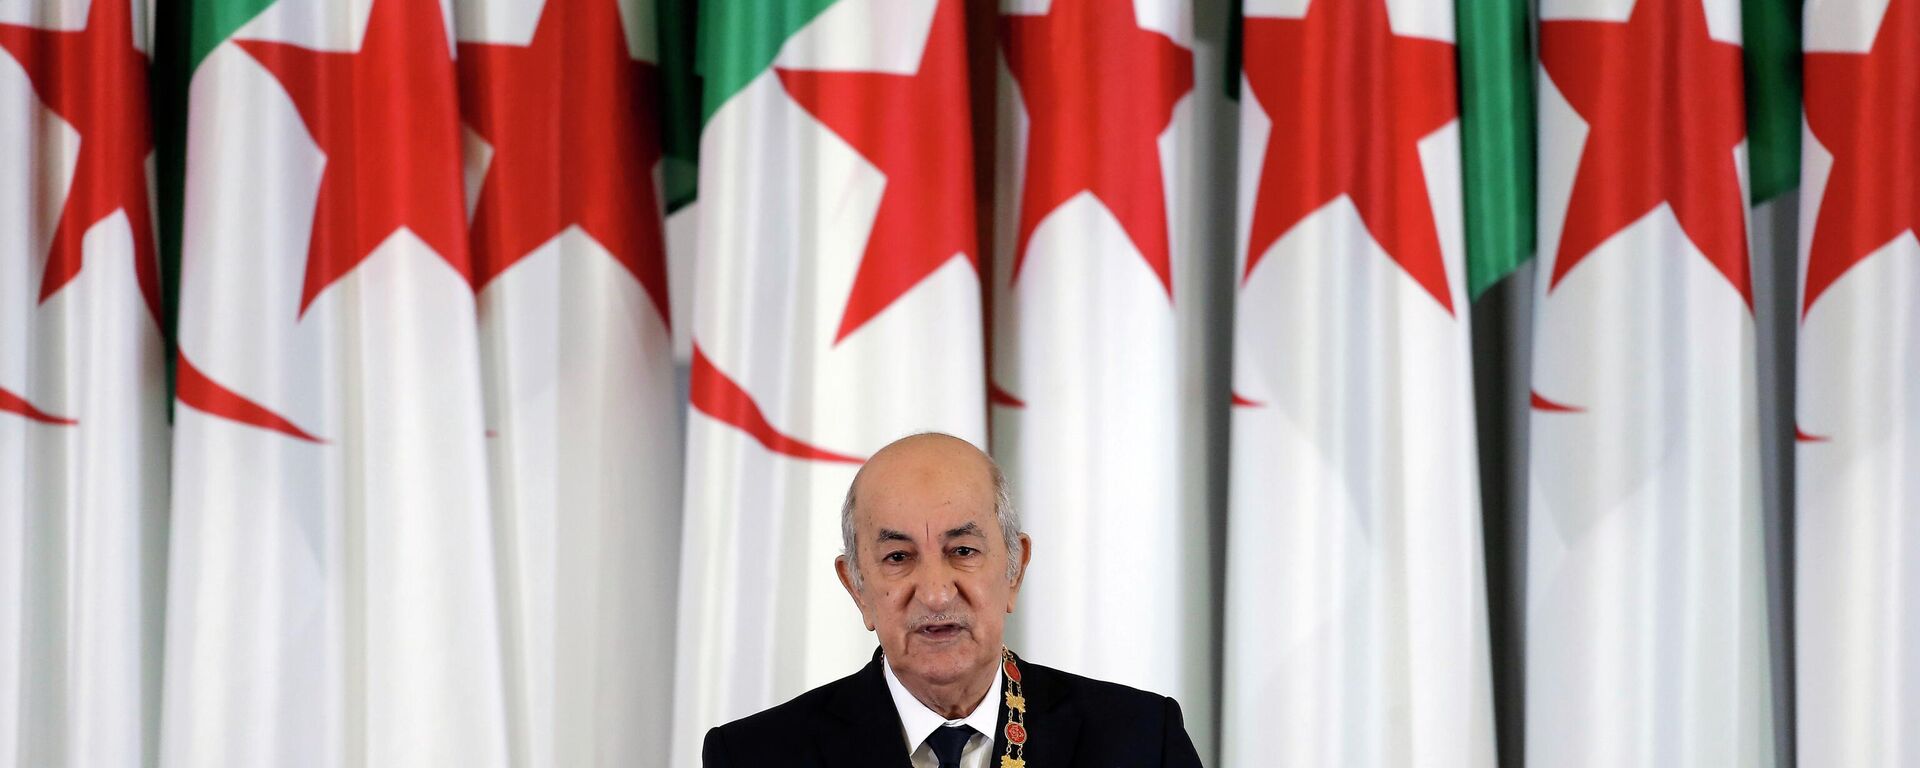 O presidente argelino, Abdelmadjid Tebboune, discursa durante cerimônia de posse no palácio presidencial, em Argel, na Argélia, em 19 de dezembro de 2019 - Sputnik Brasil, 1920, 31.07.2022